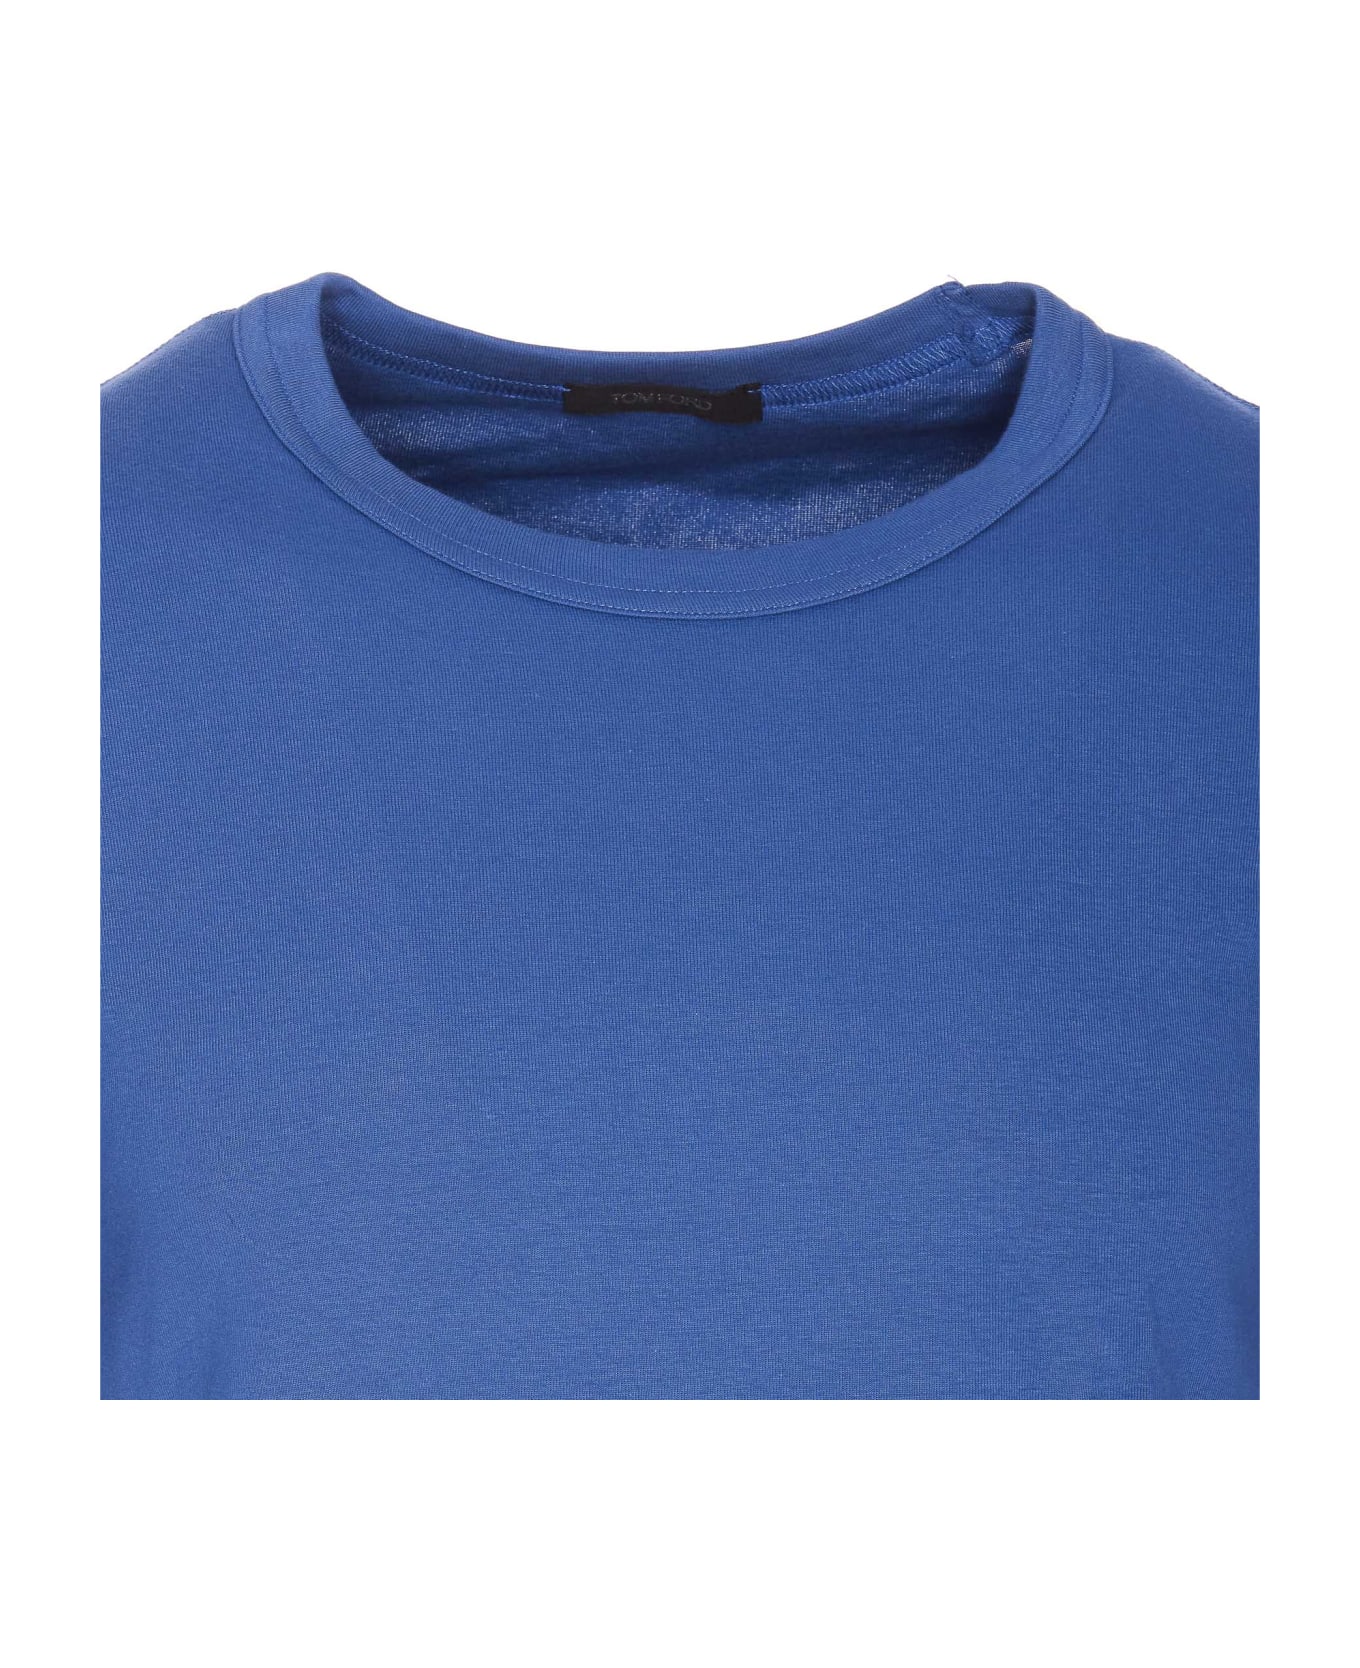 Tom Ford T-shirt - Blue シャツ